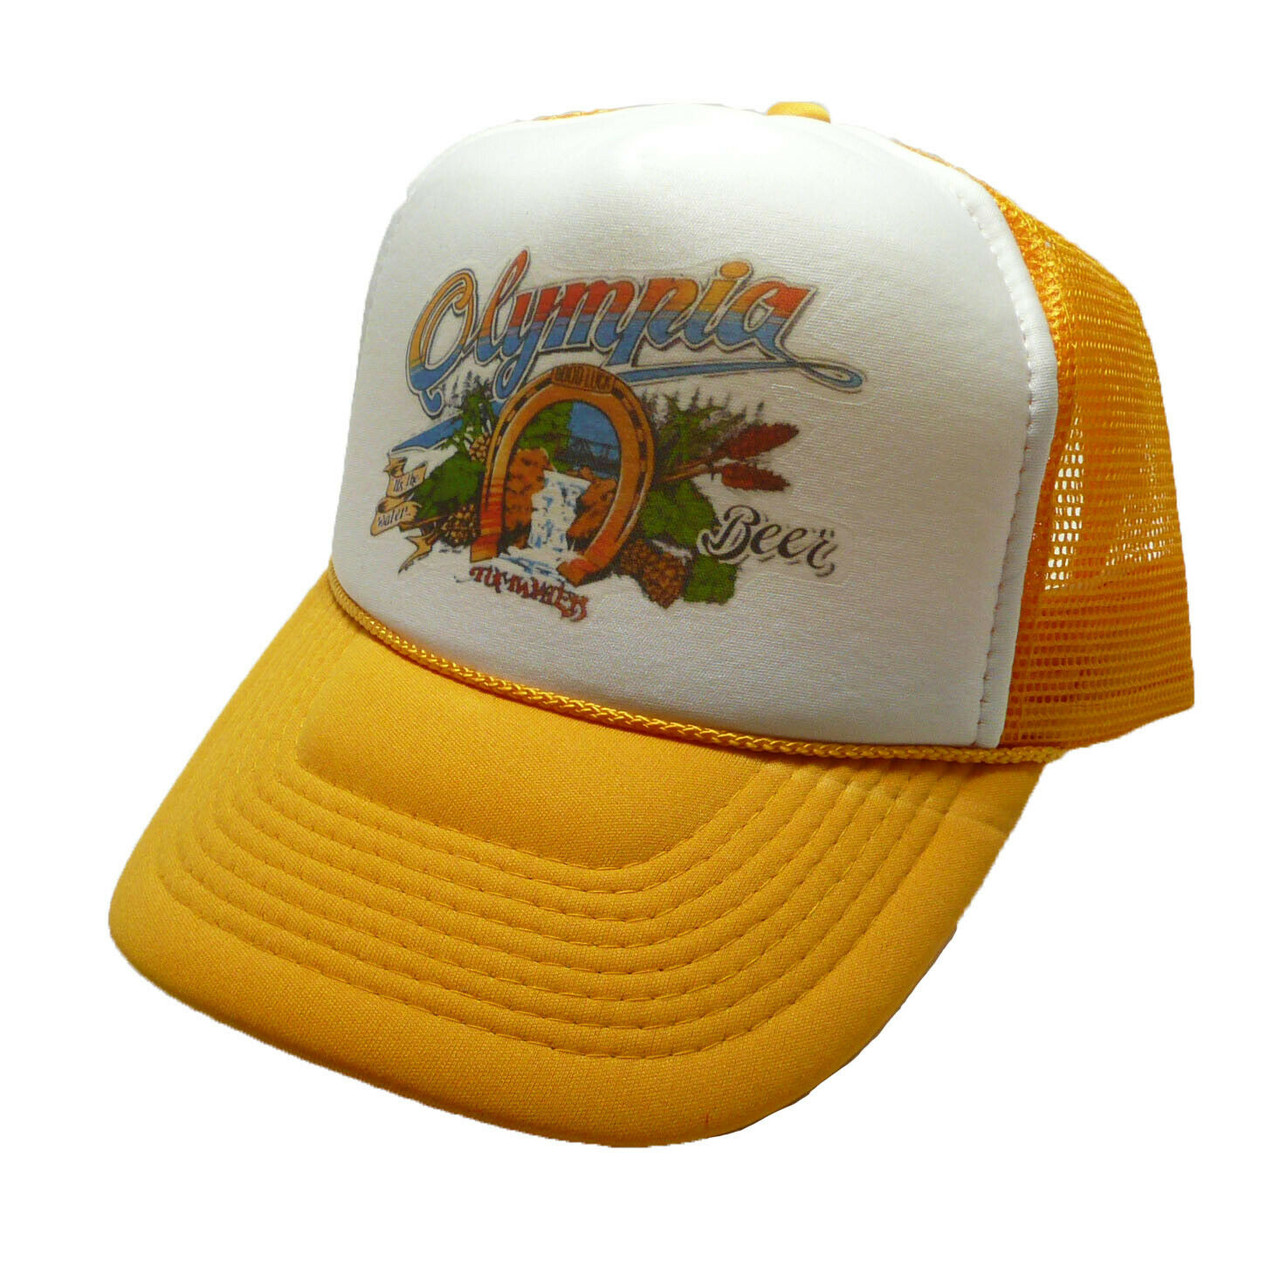 Olympia Beer Hat, Olympia Beer 80's hat, Olympia Cap, Trucker Hat, Beer Hats